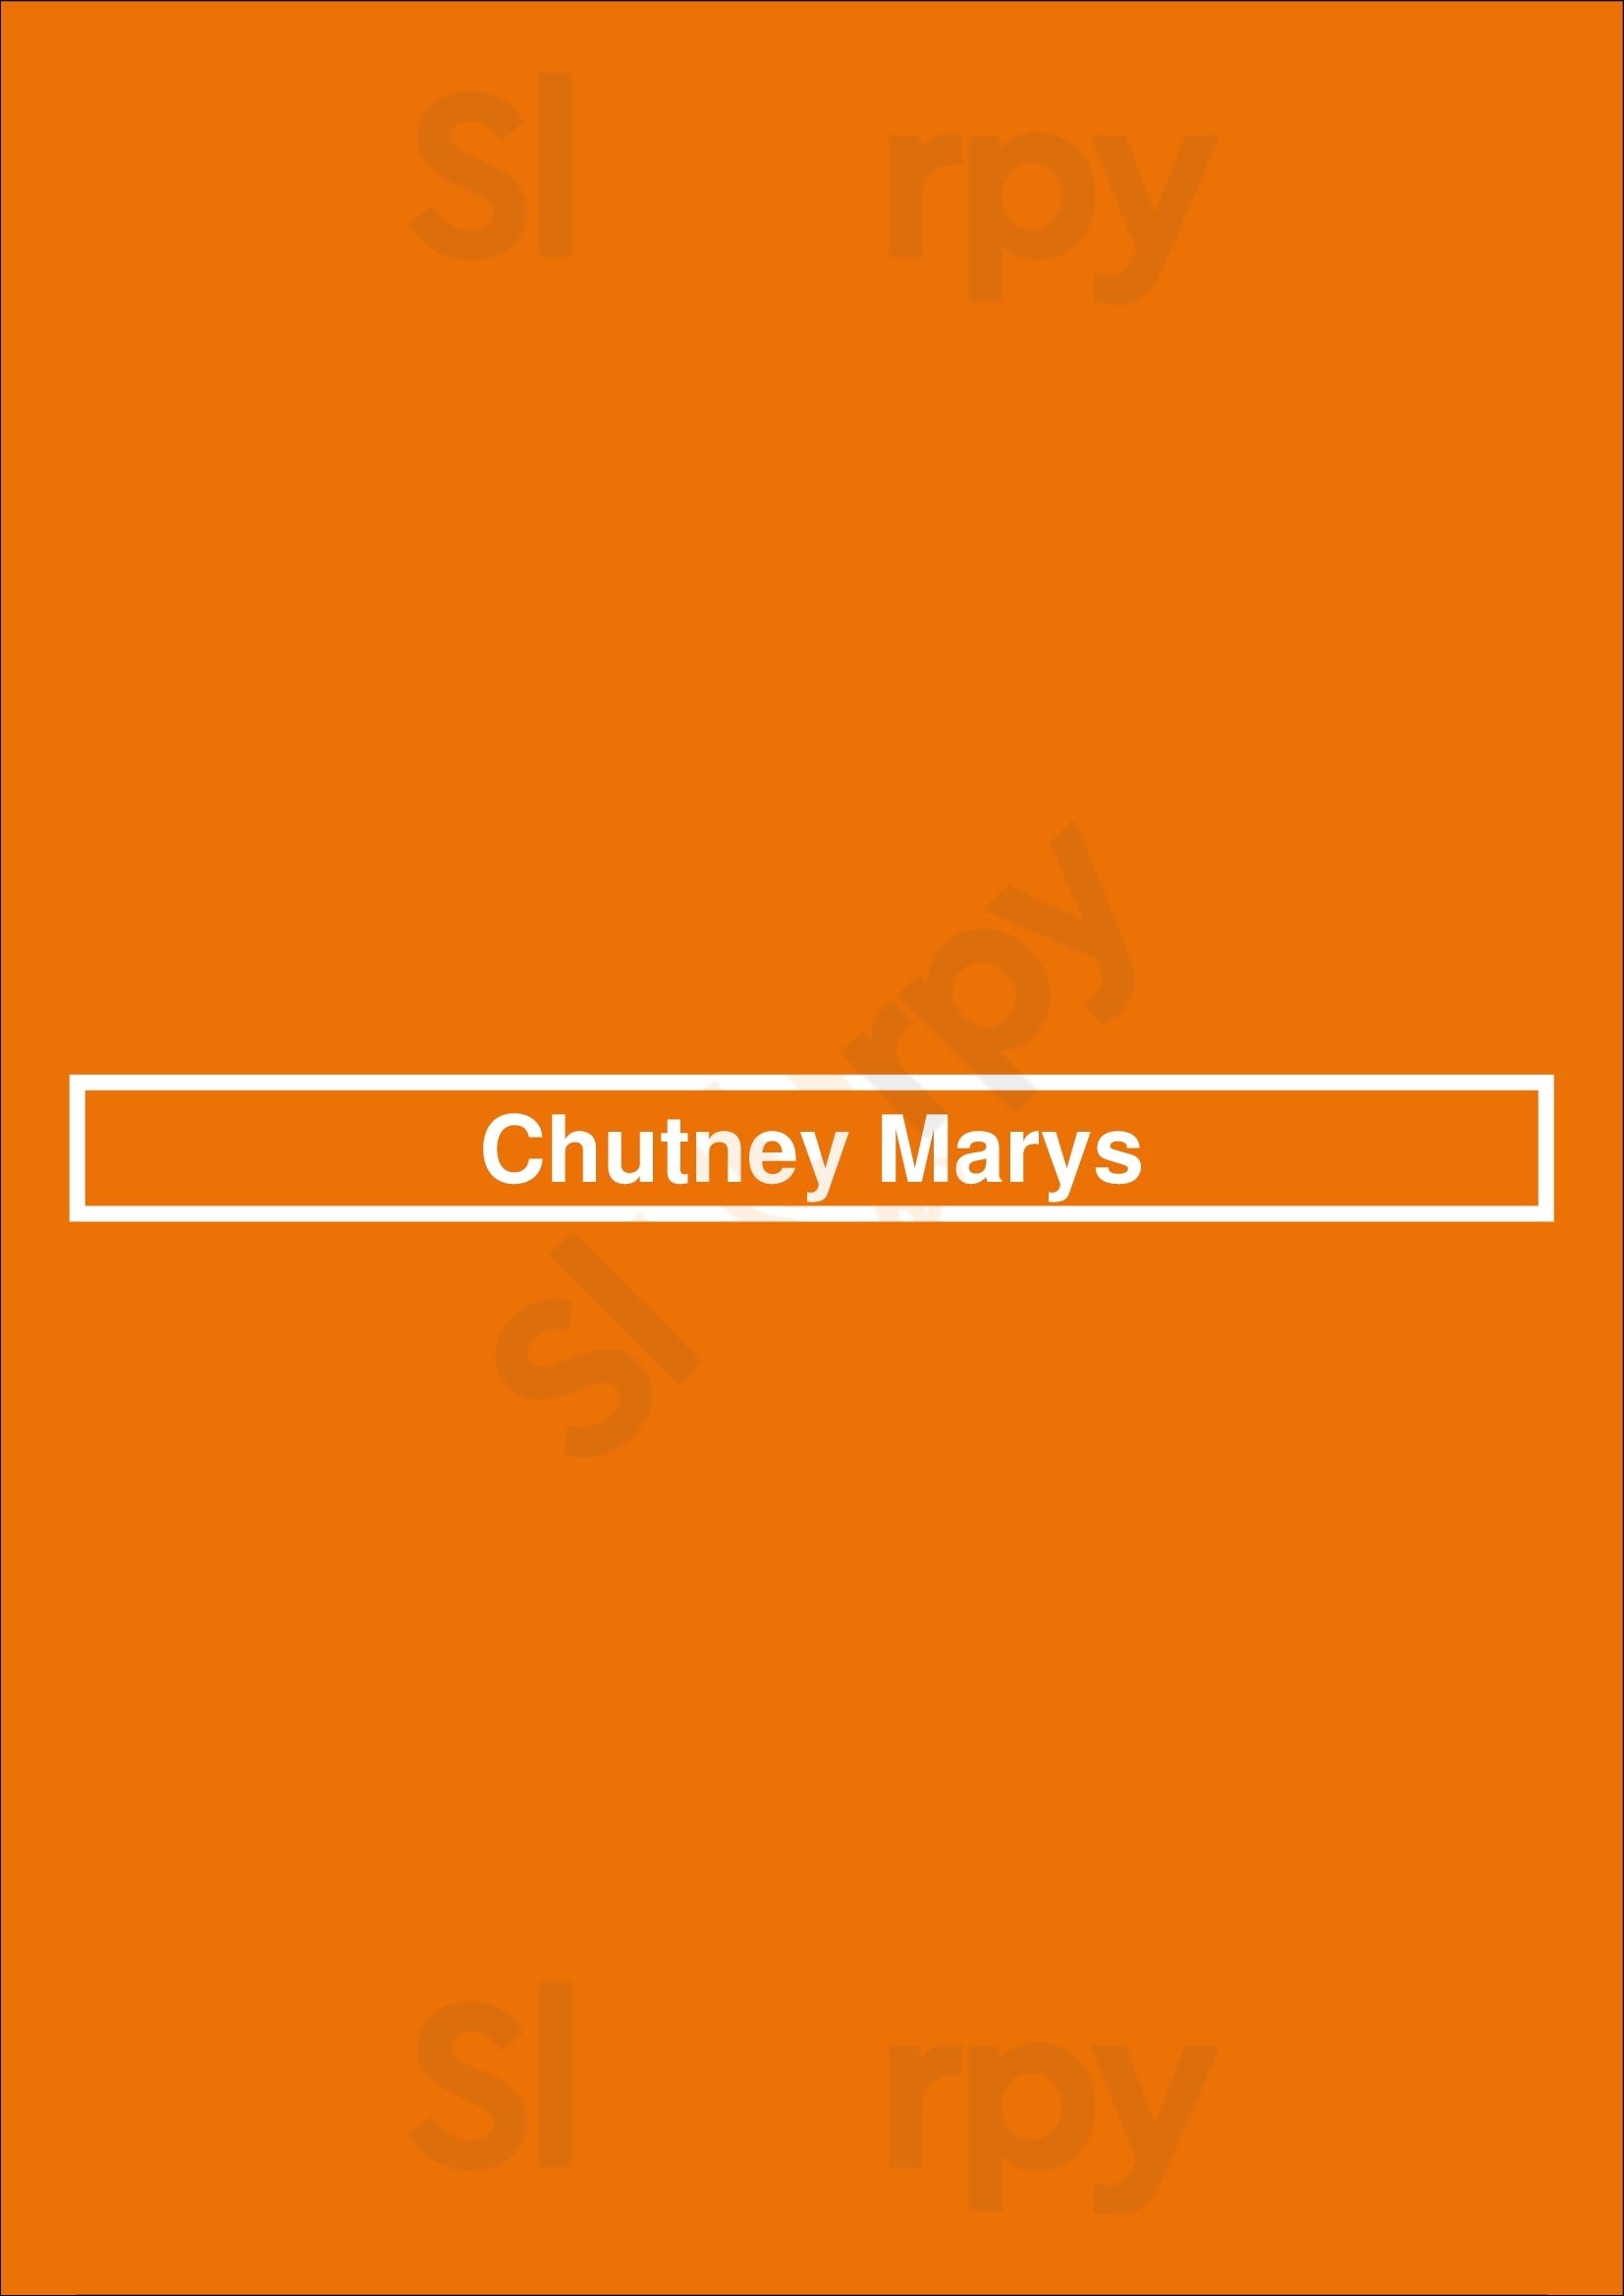 Chutney Marys Subiaco Menu - 1